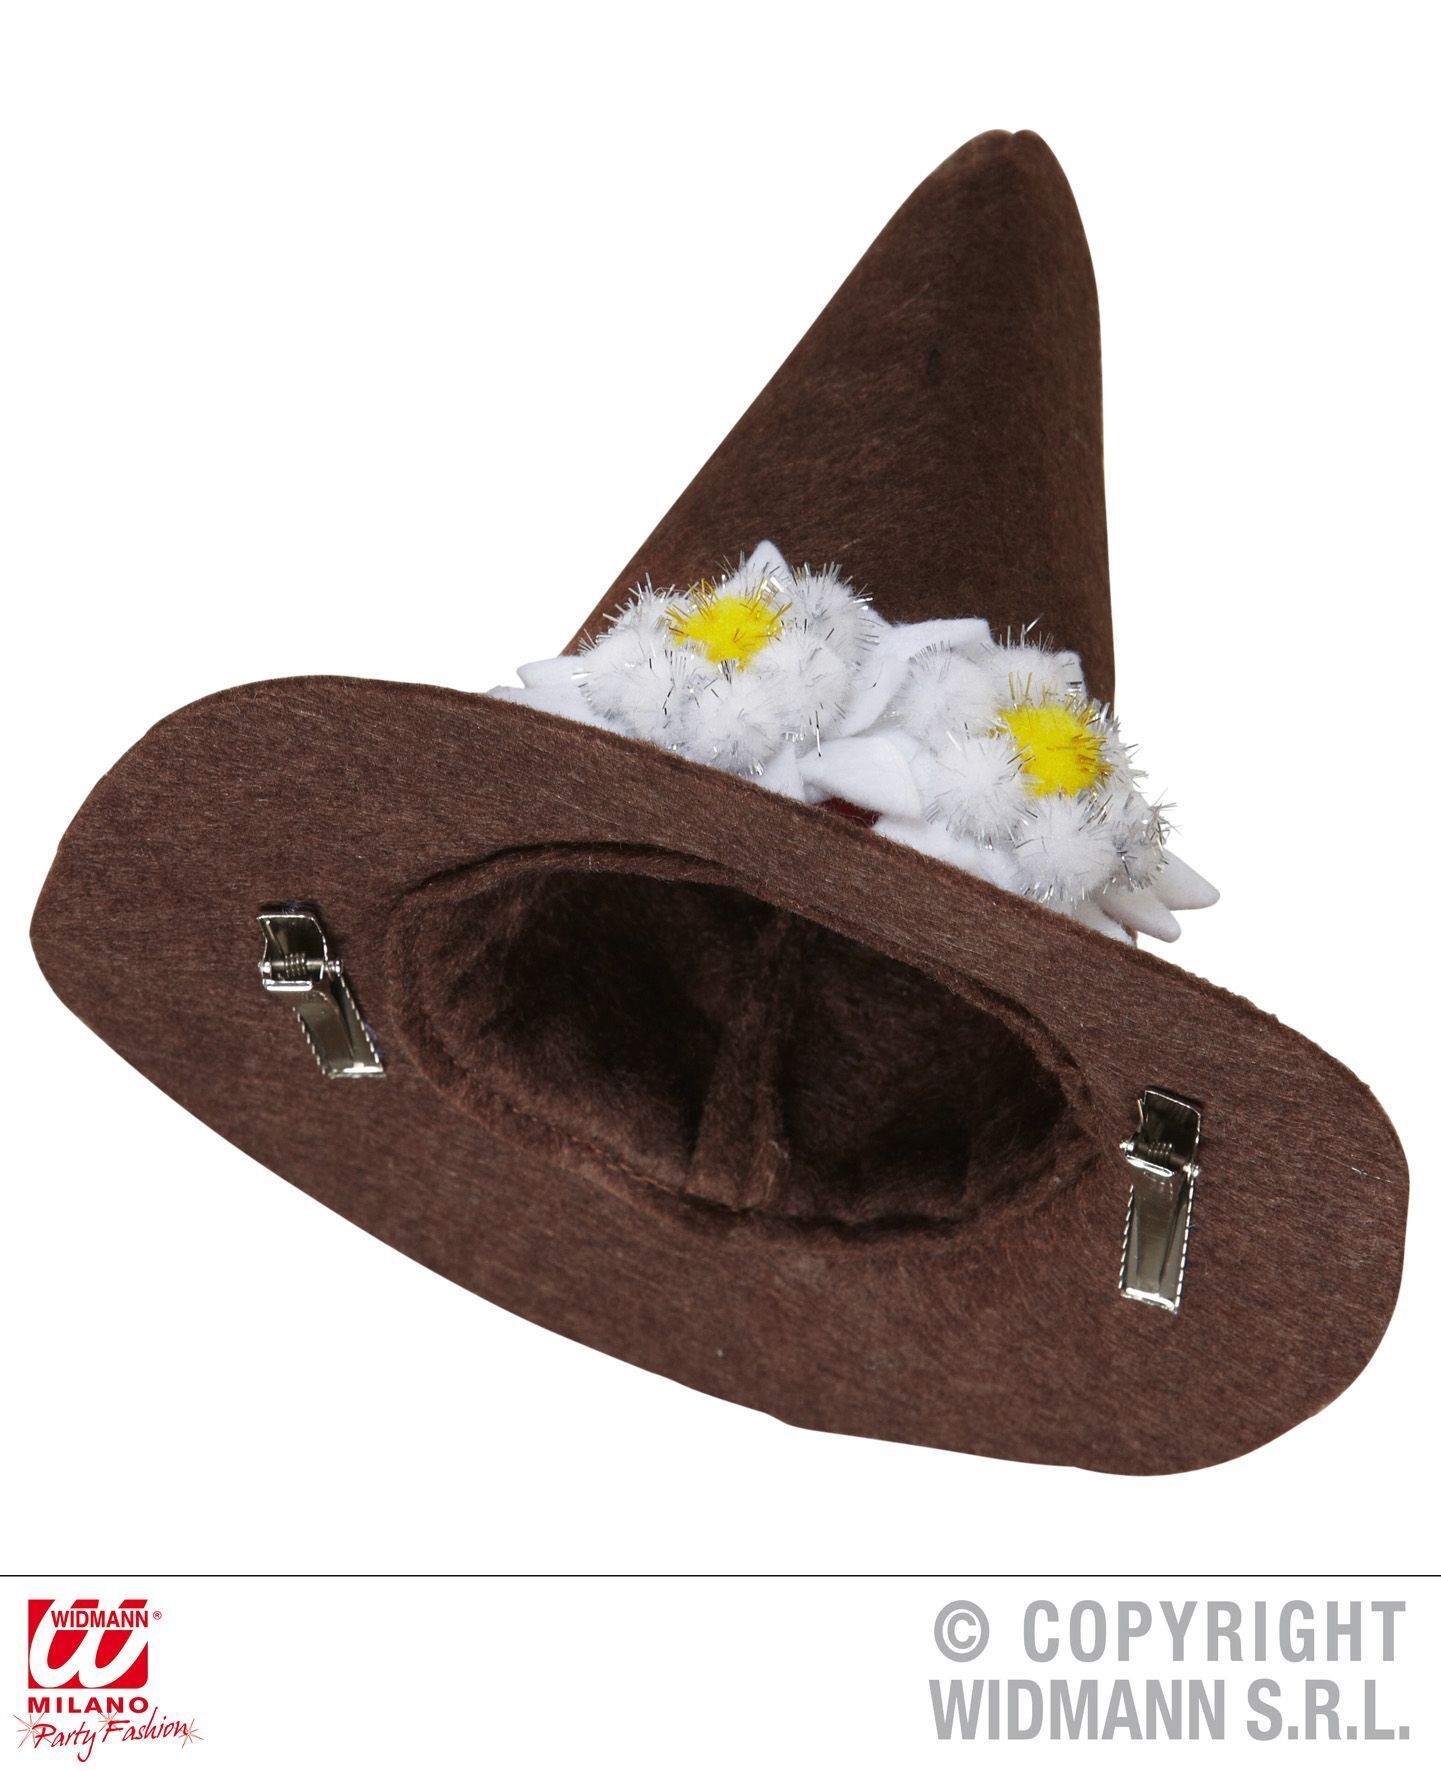 Mini hoed bayern bruin met edelweis